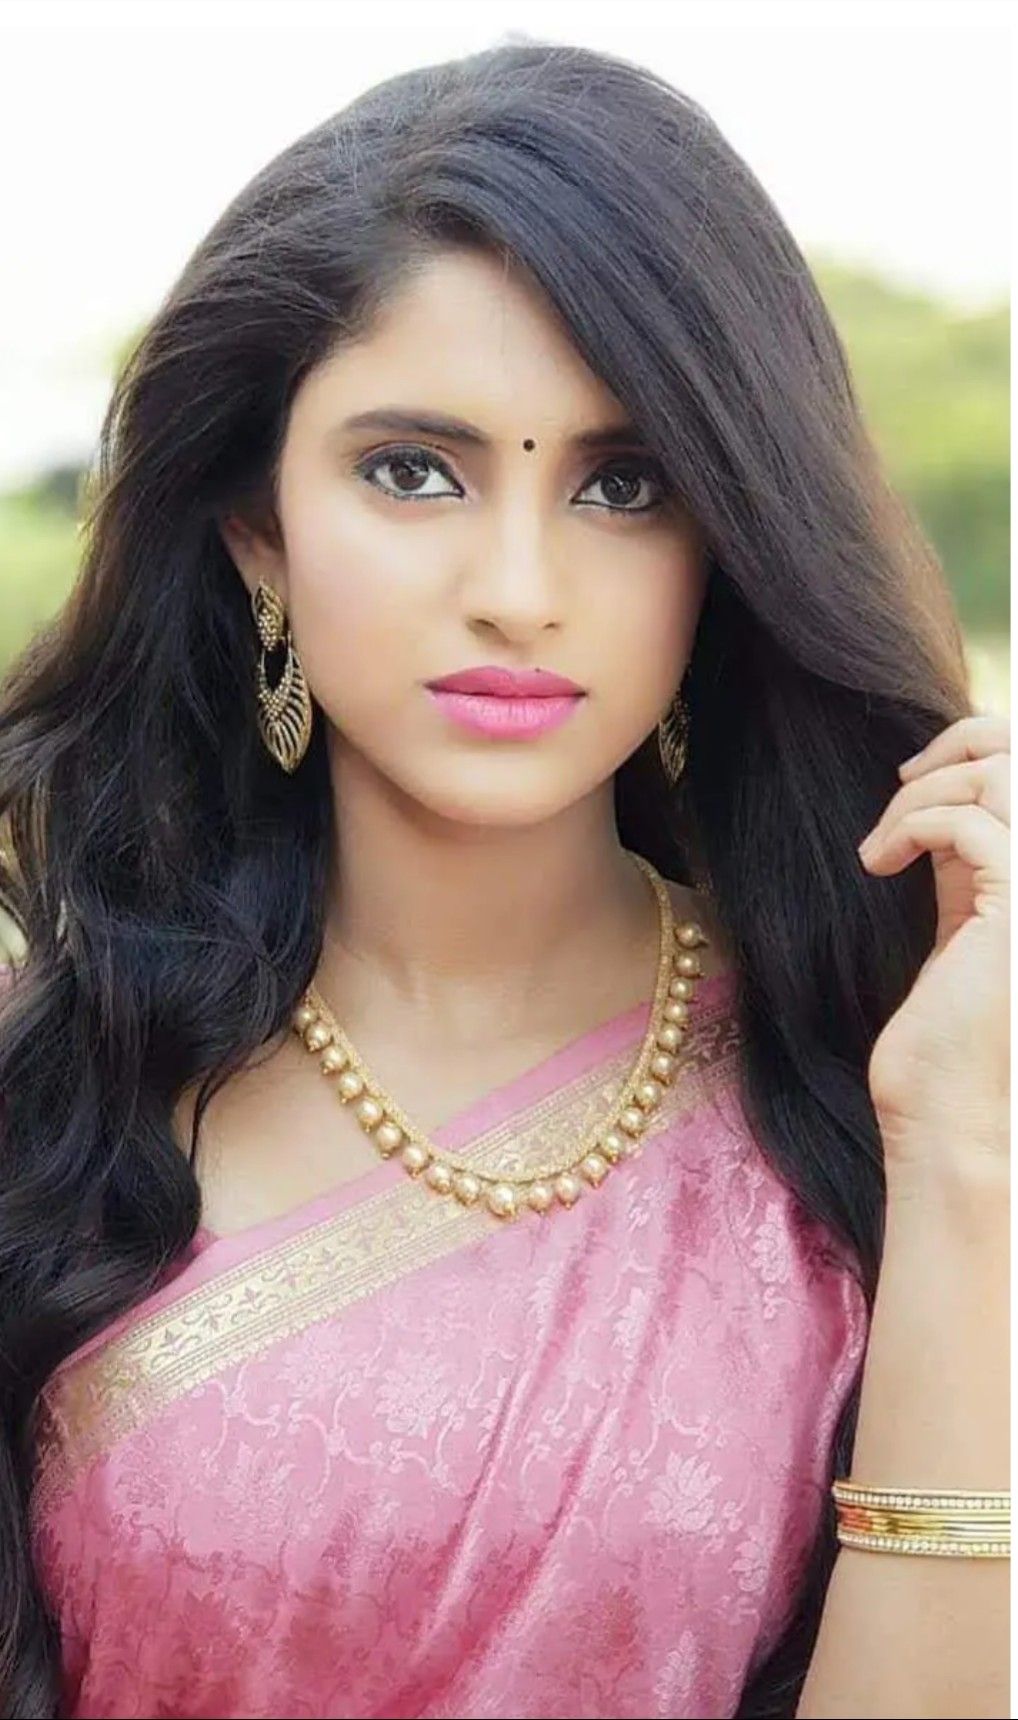 Beauty Beautiful Indian Women - 1018x1720 Wallpaper 